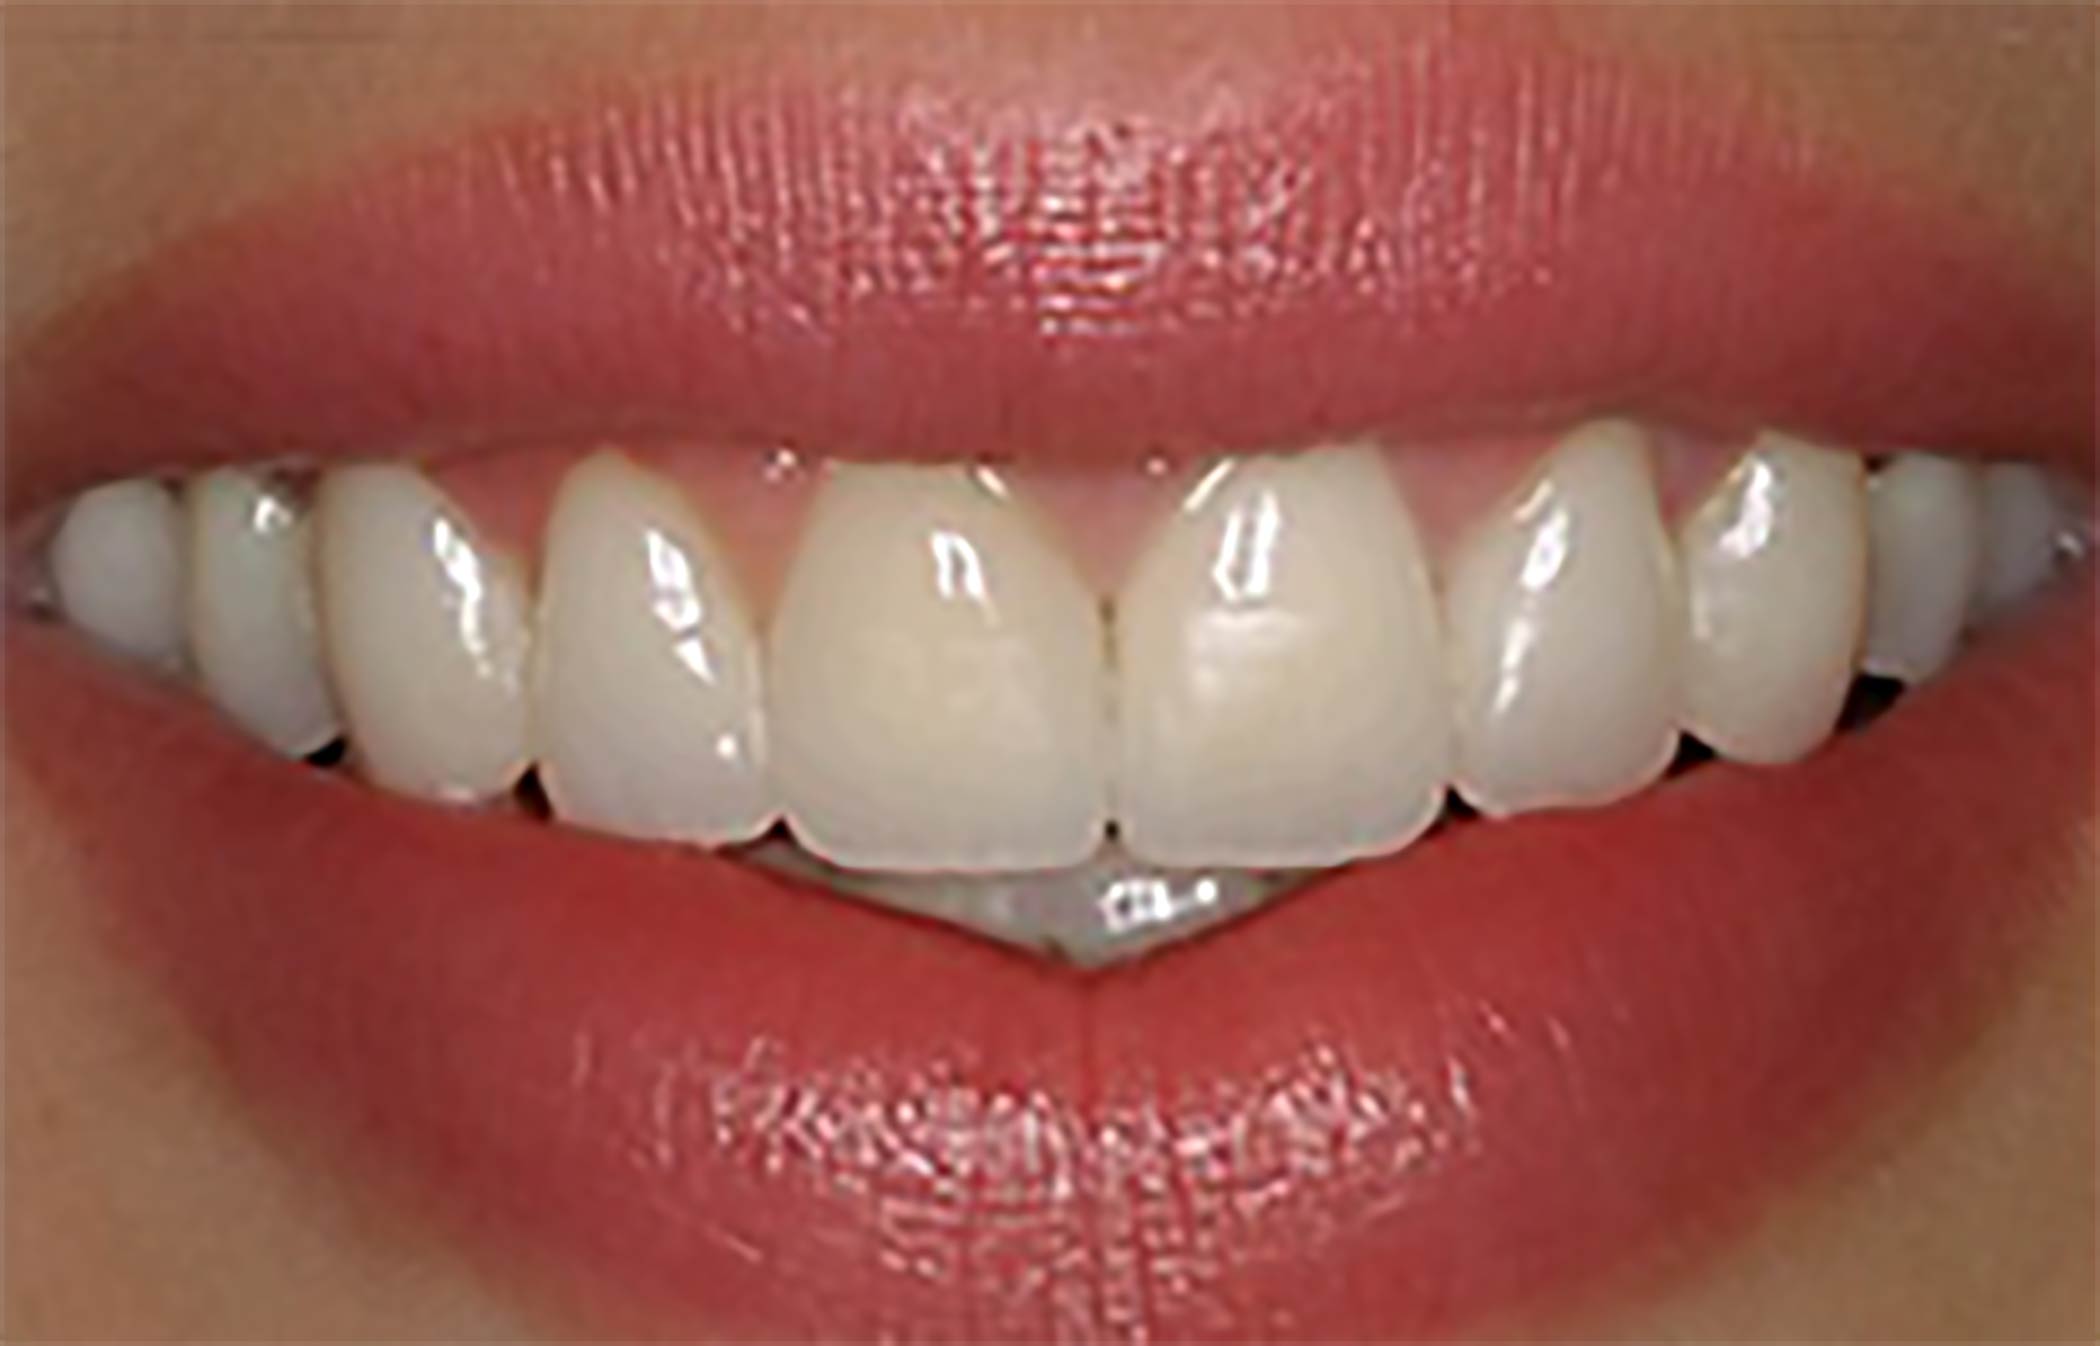 Voici le résultat après la pose de facettes dentaire à Marseille par le dentiste Barbara Saiman.